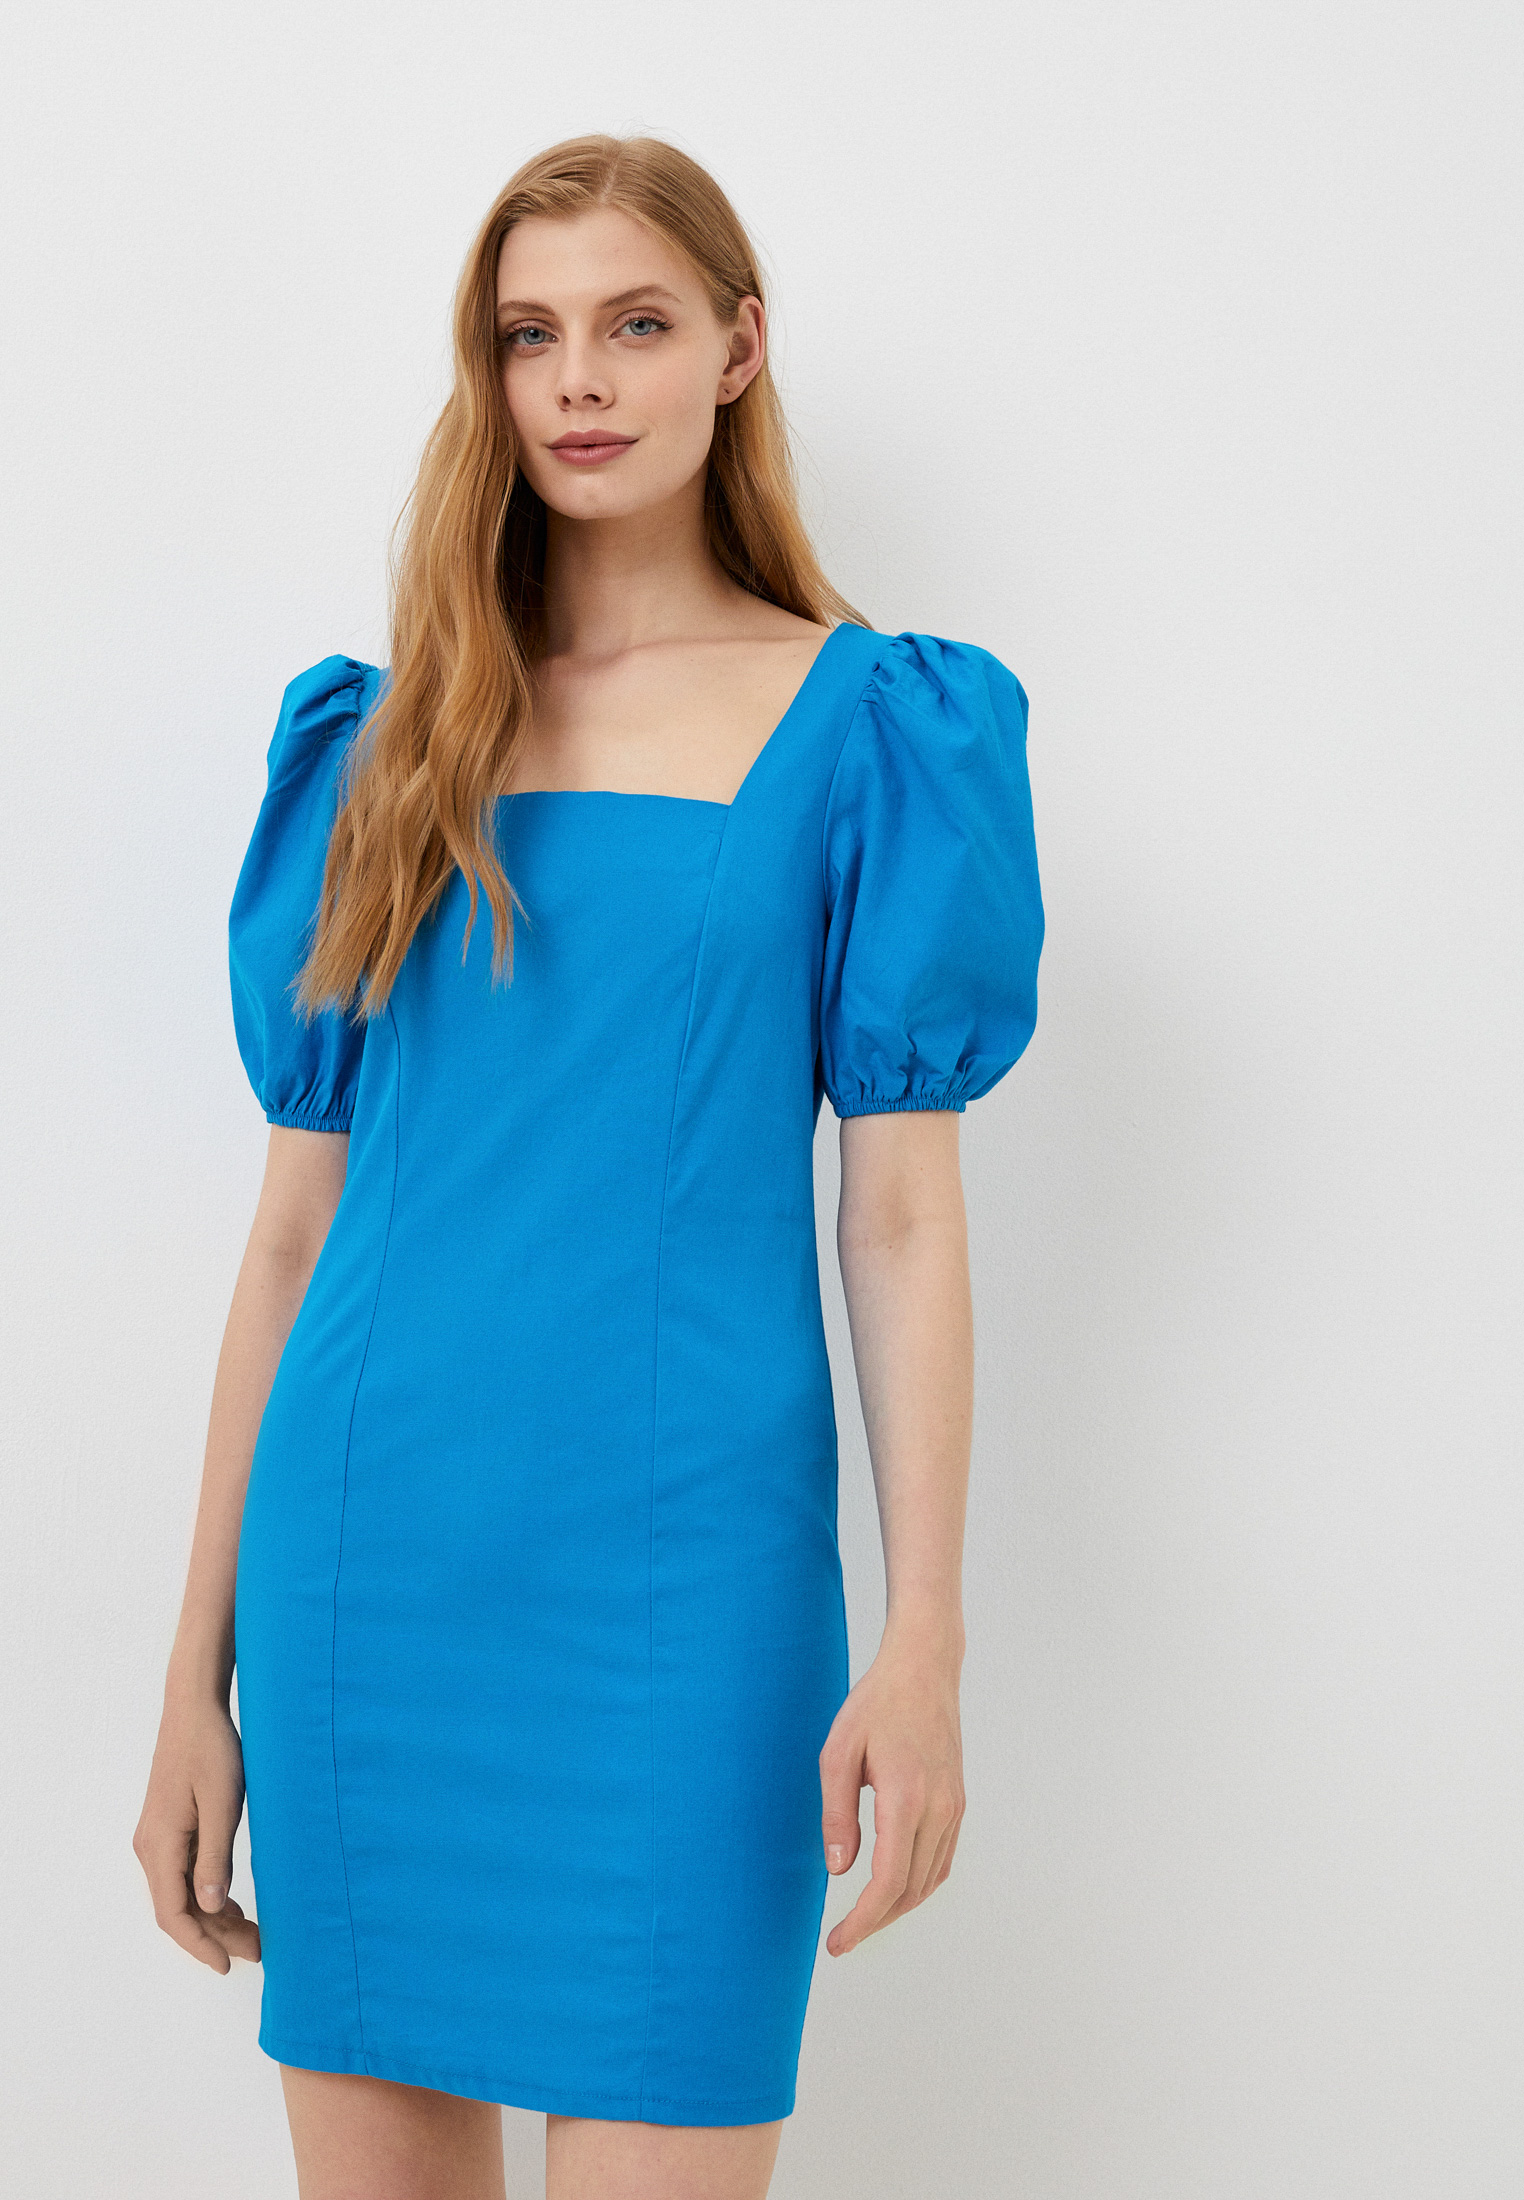 Платье Bad Queen цвет синий Rtlacr768501 — купить в интернет магазине Lamoda